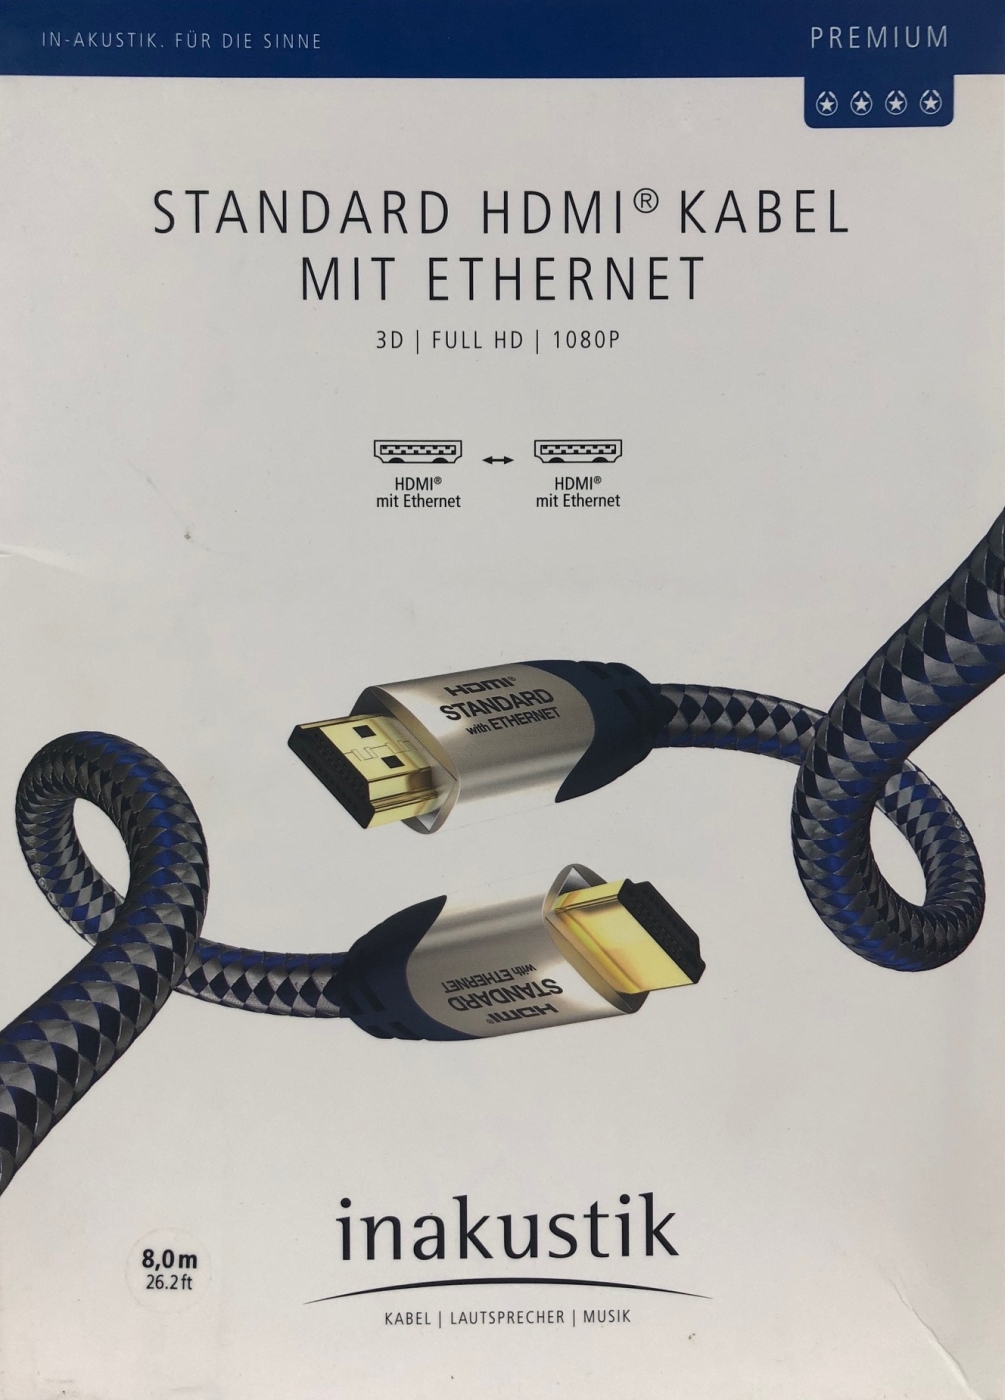 Inakustik Premium High Speed HDMI Kabel 8-0m mit Ethernet HDMI unter Inakustik